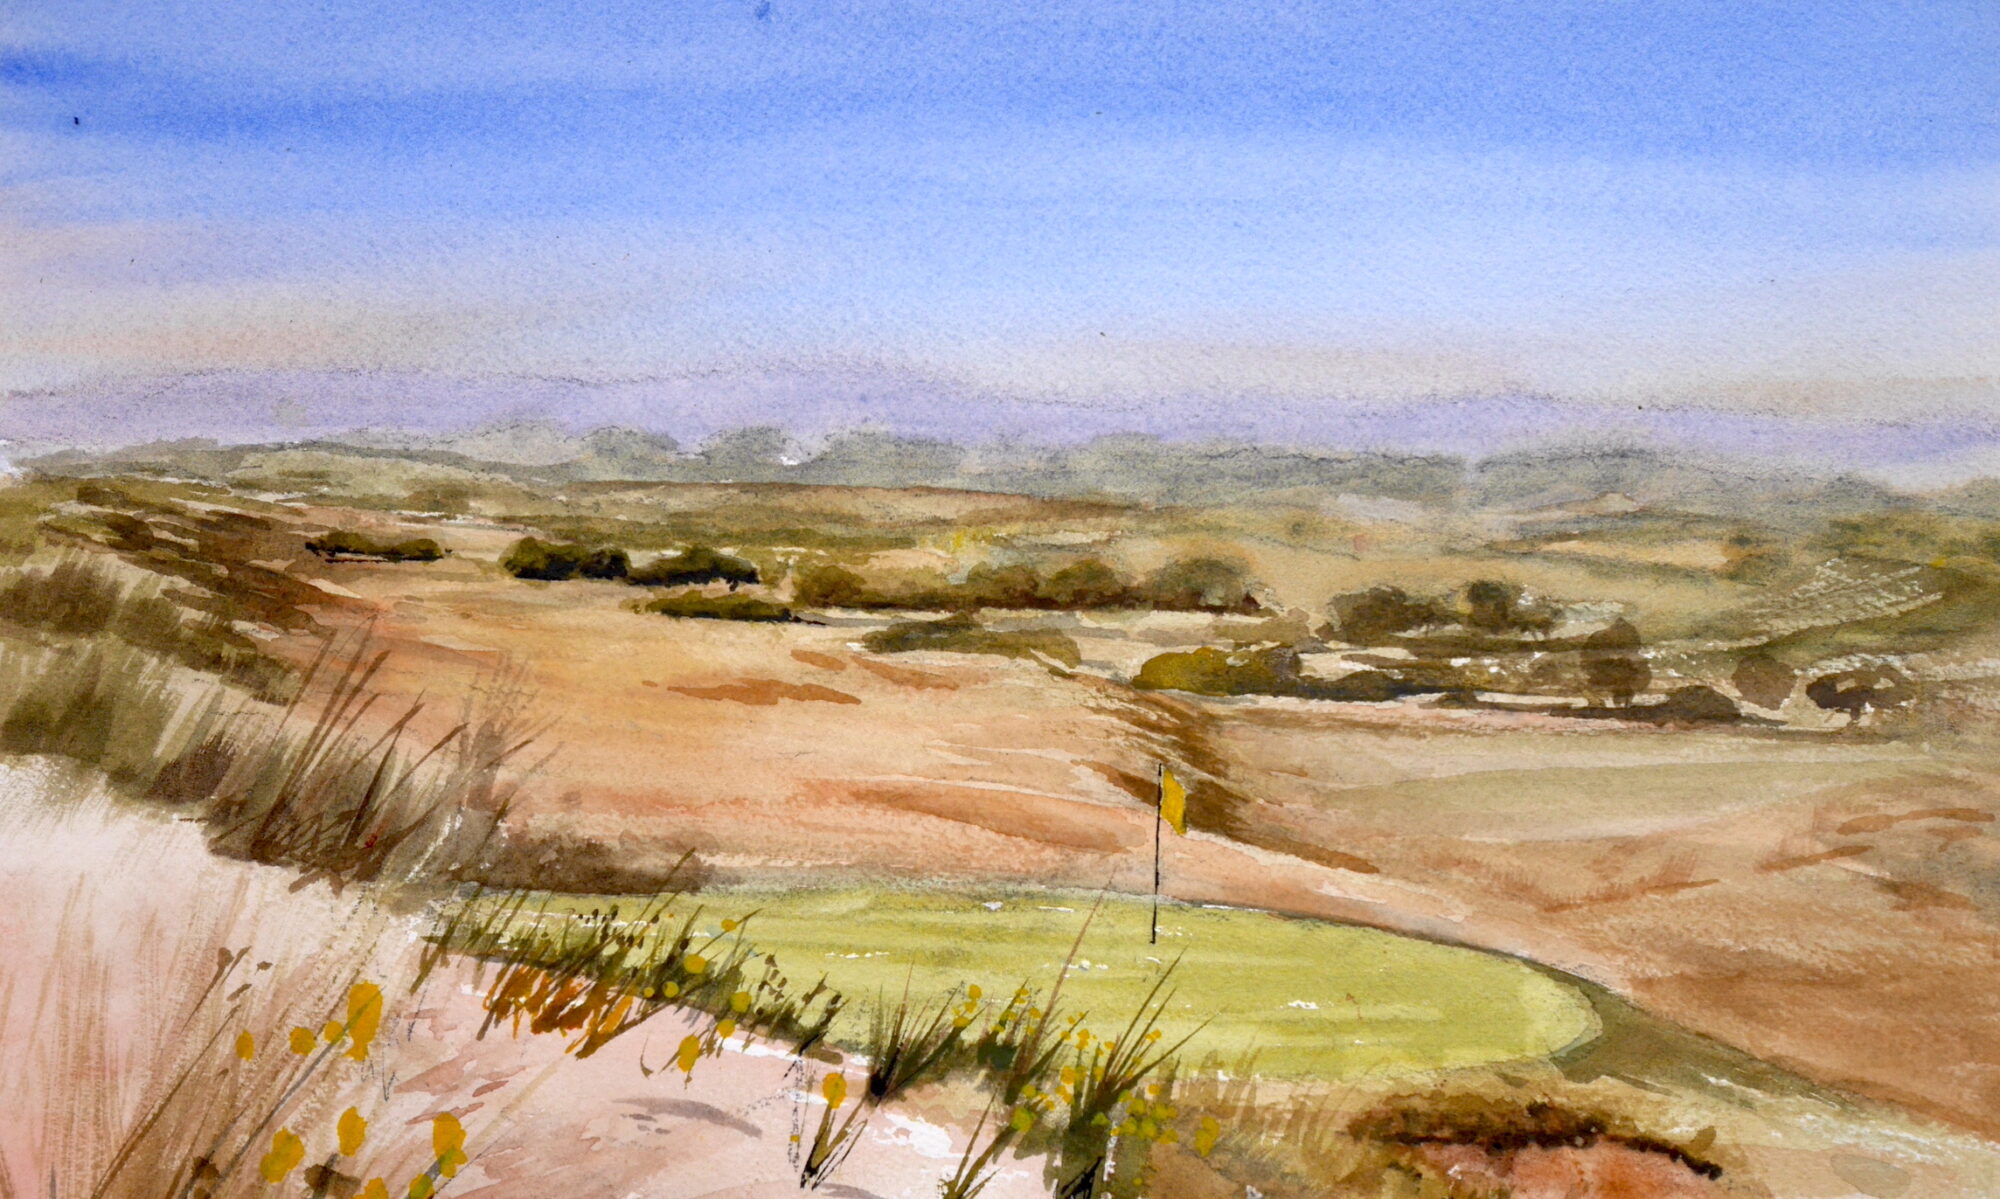 Dawlish Warren Golf Course - a landscape watercolour painting.